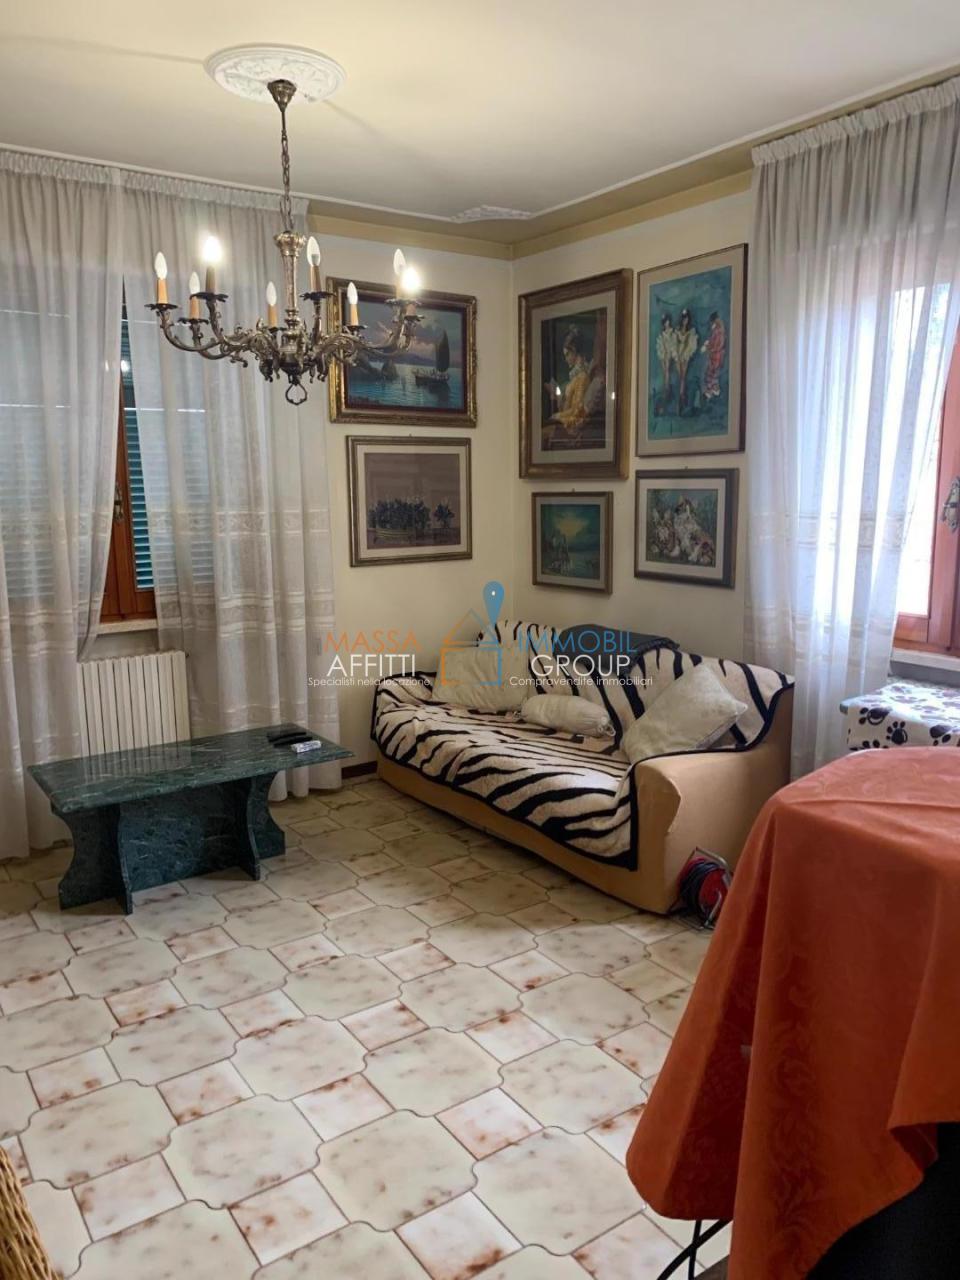 Appartamento in vendita a Massa, 7 locali, prezzo € 240.000 | PortaleAgenzieImmobiliari.it